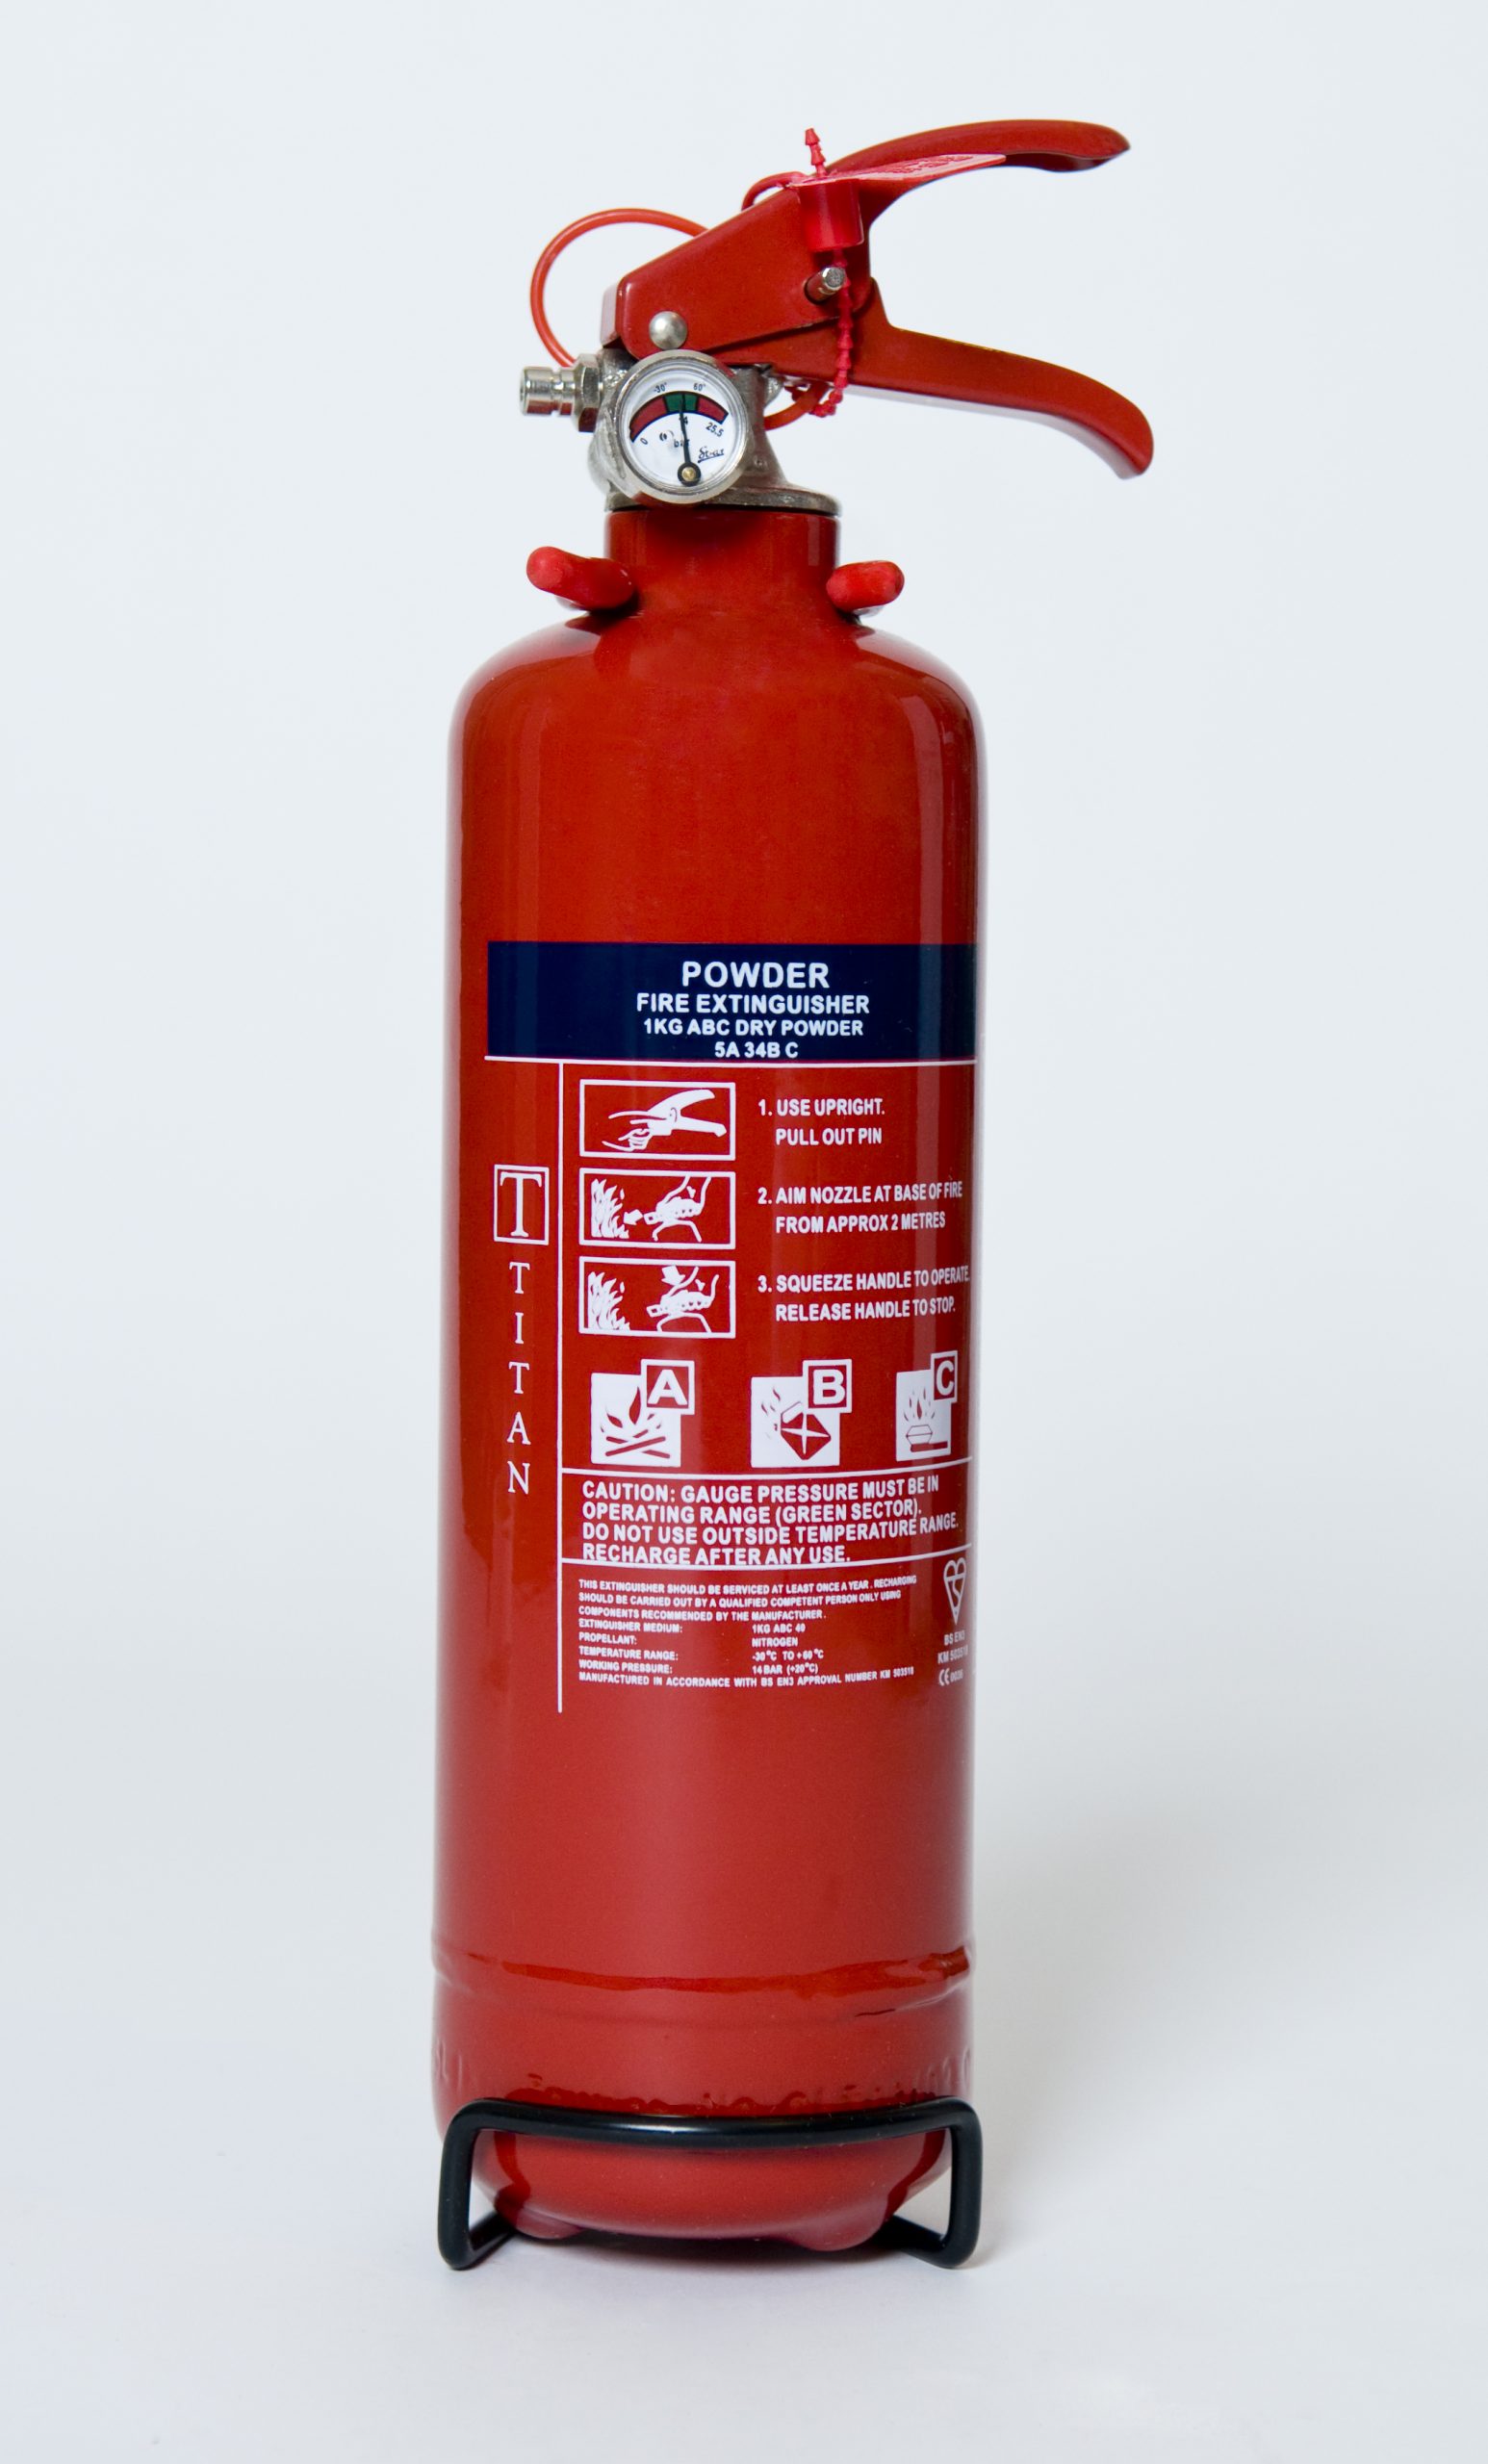 TITAN Kitemarked 1kg Powder Fire Extinguisher